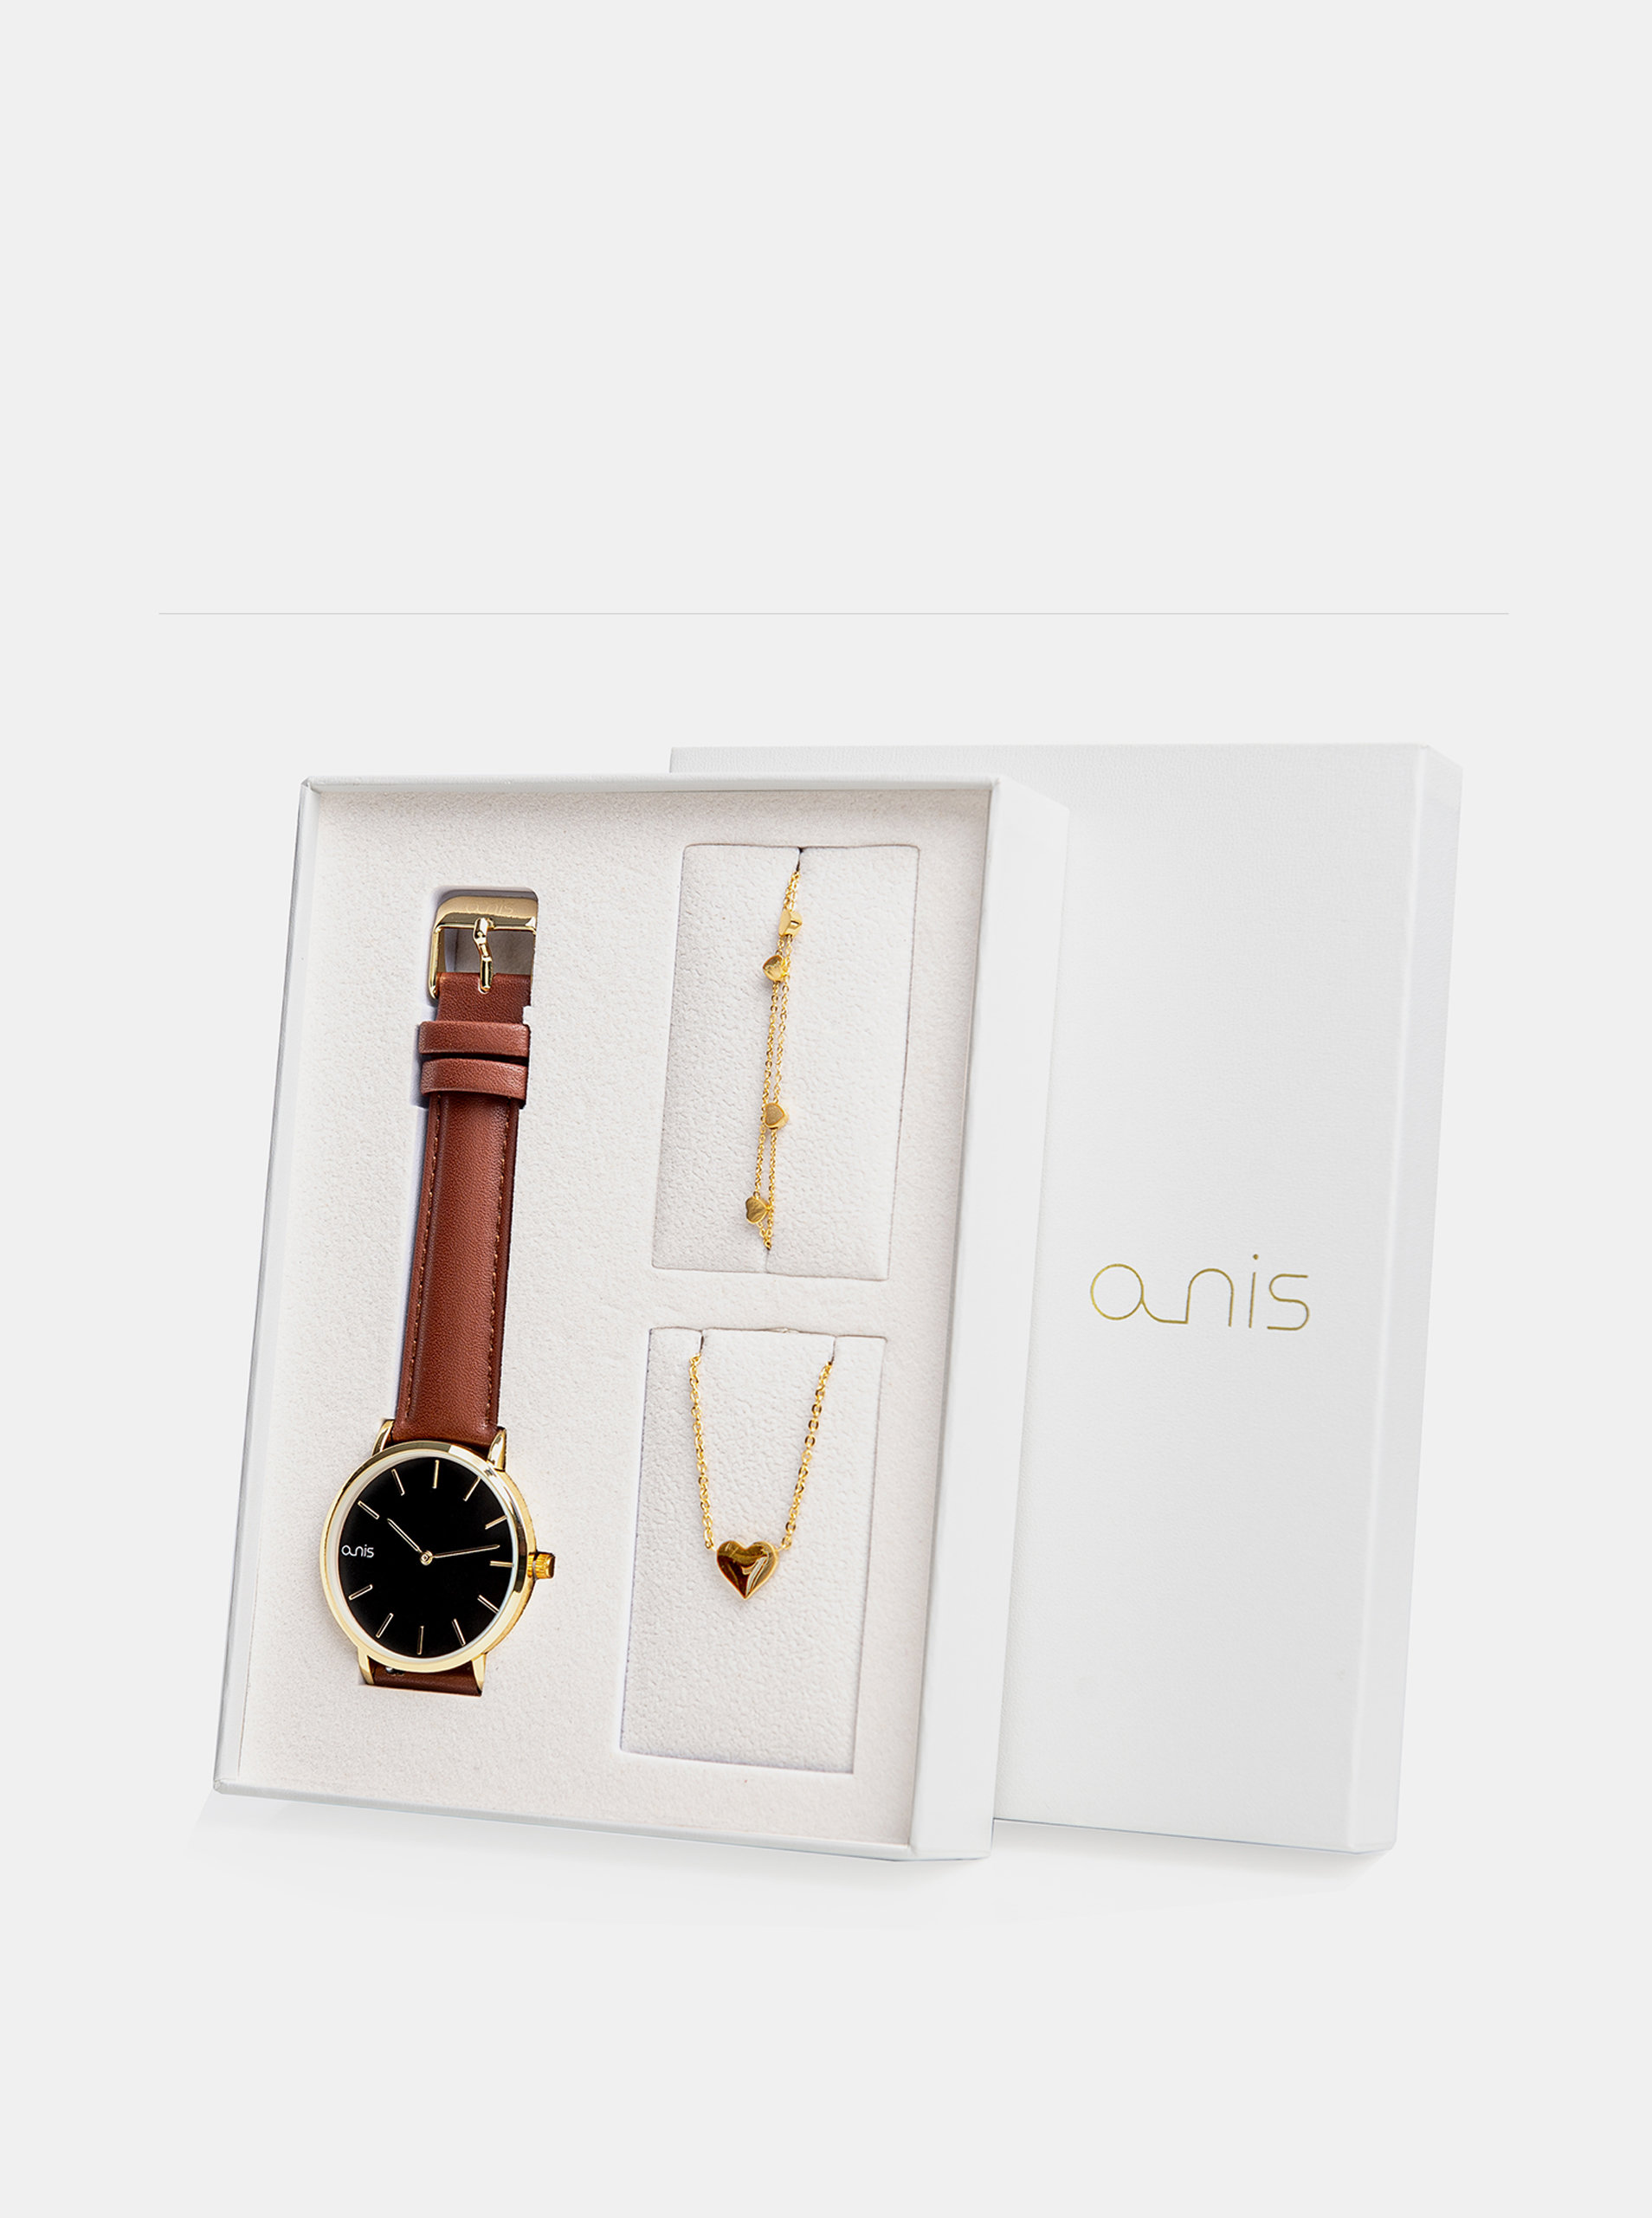 Fotografie Sada dámského náramku, náhrdelníku a hodinek s hnědým koženým páskem a-nis